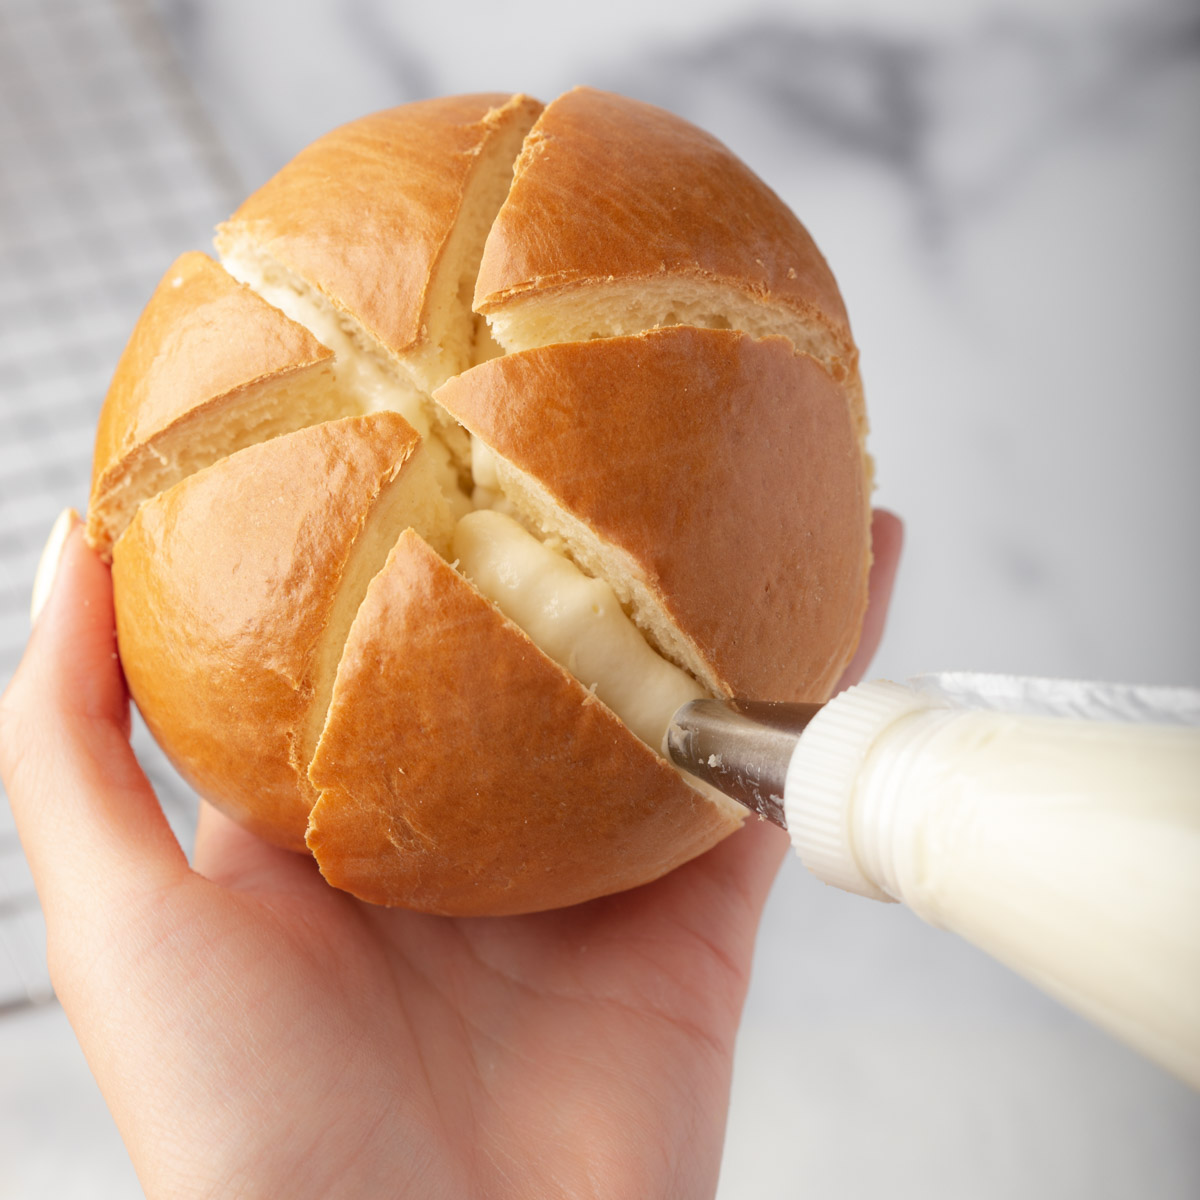 piping cream cheese into a sliced bun